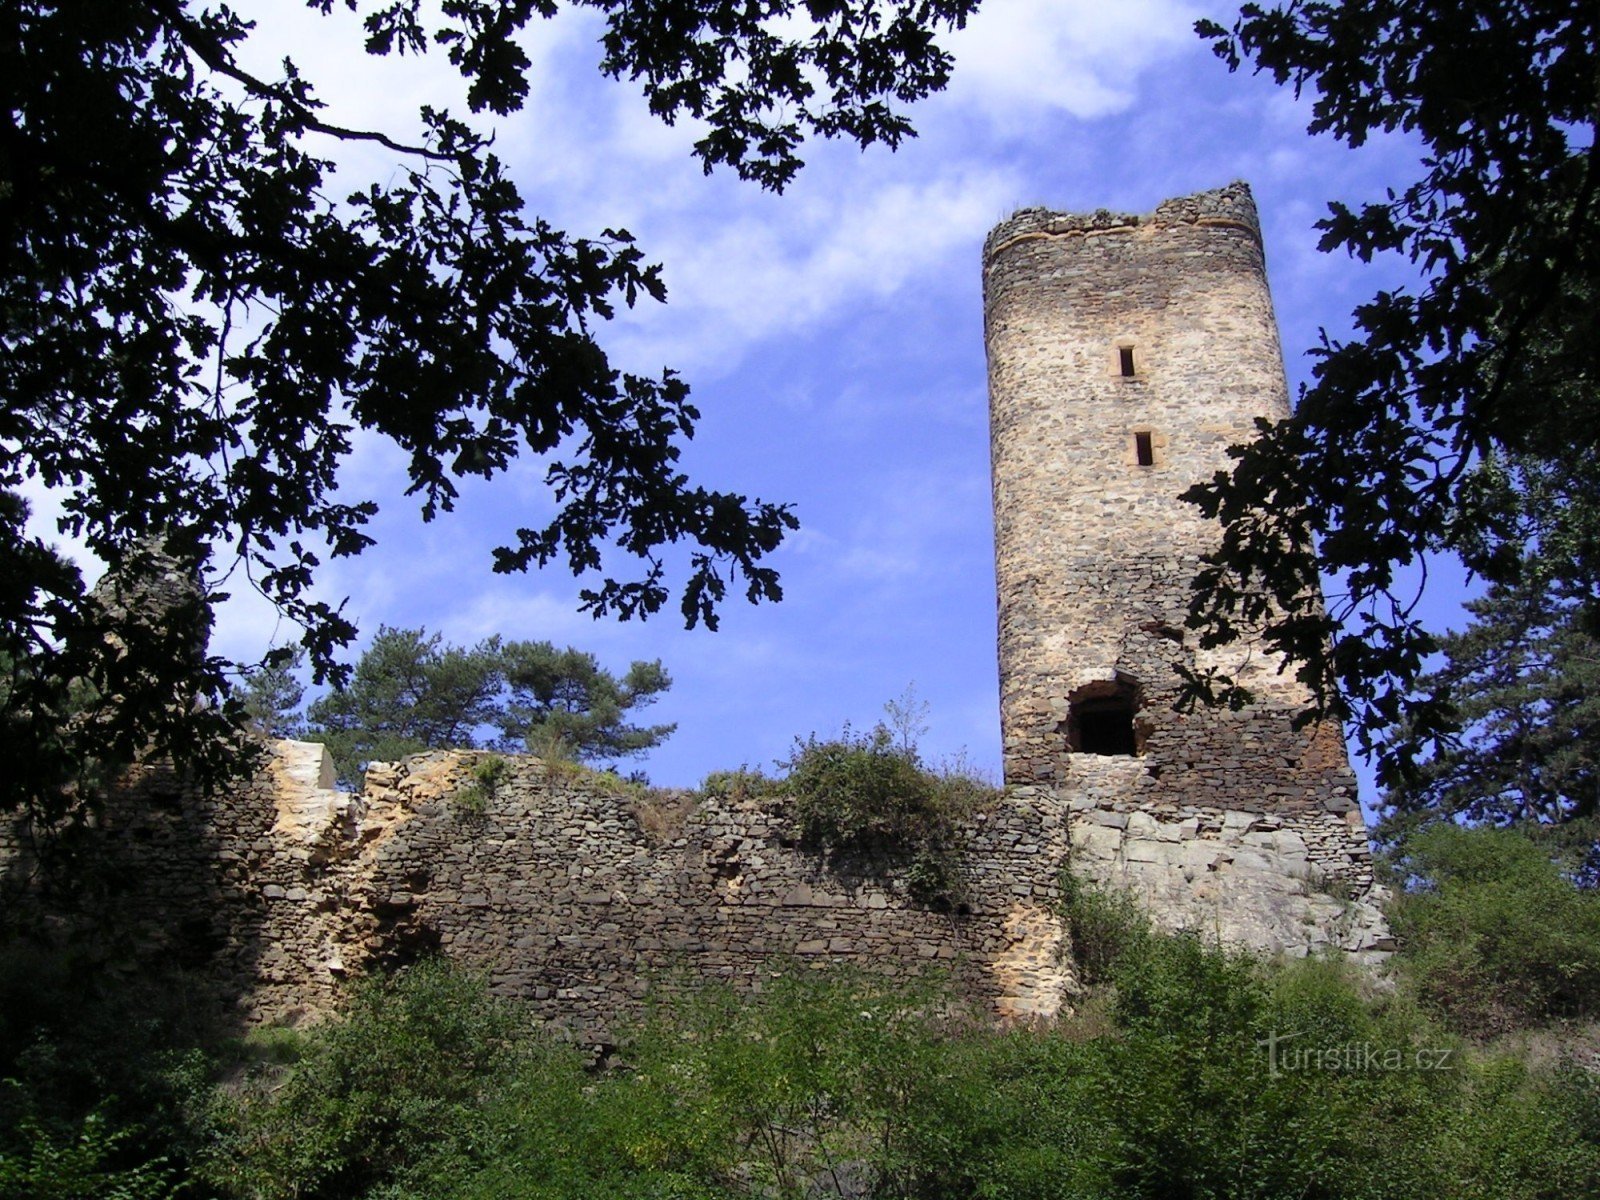 Castle Libštejn